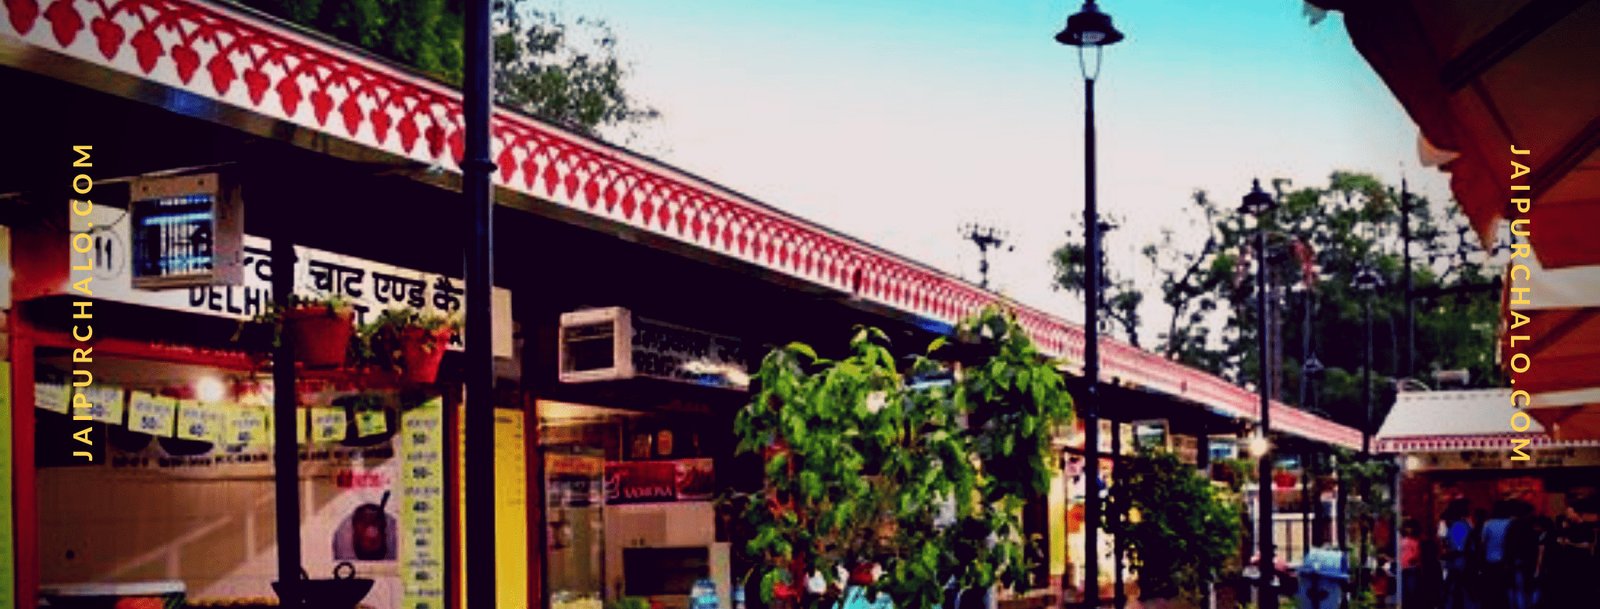 Masala Chowk Jaipur shops